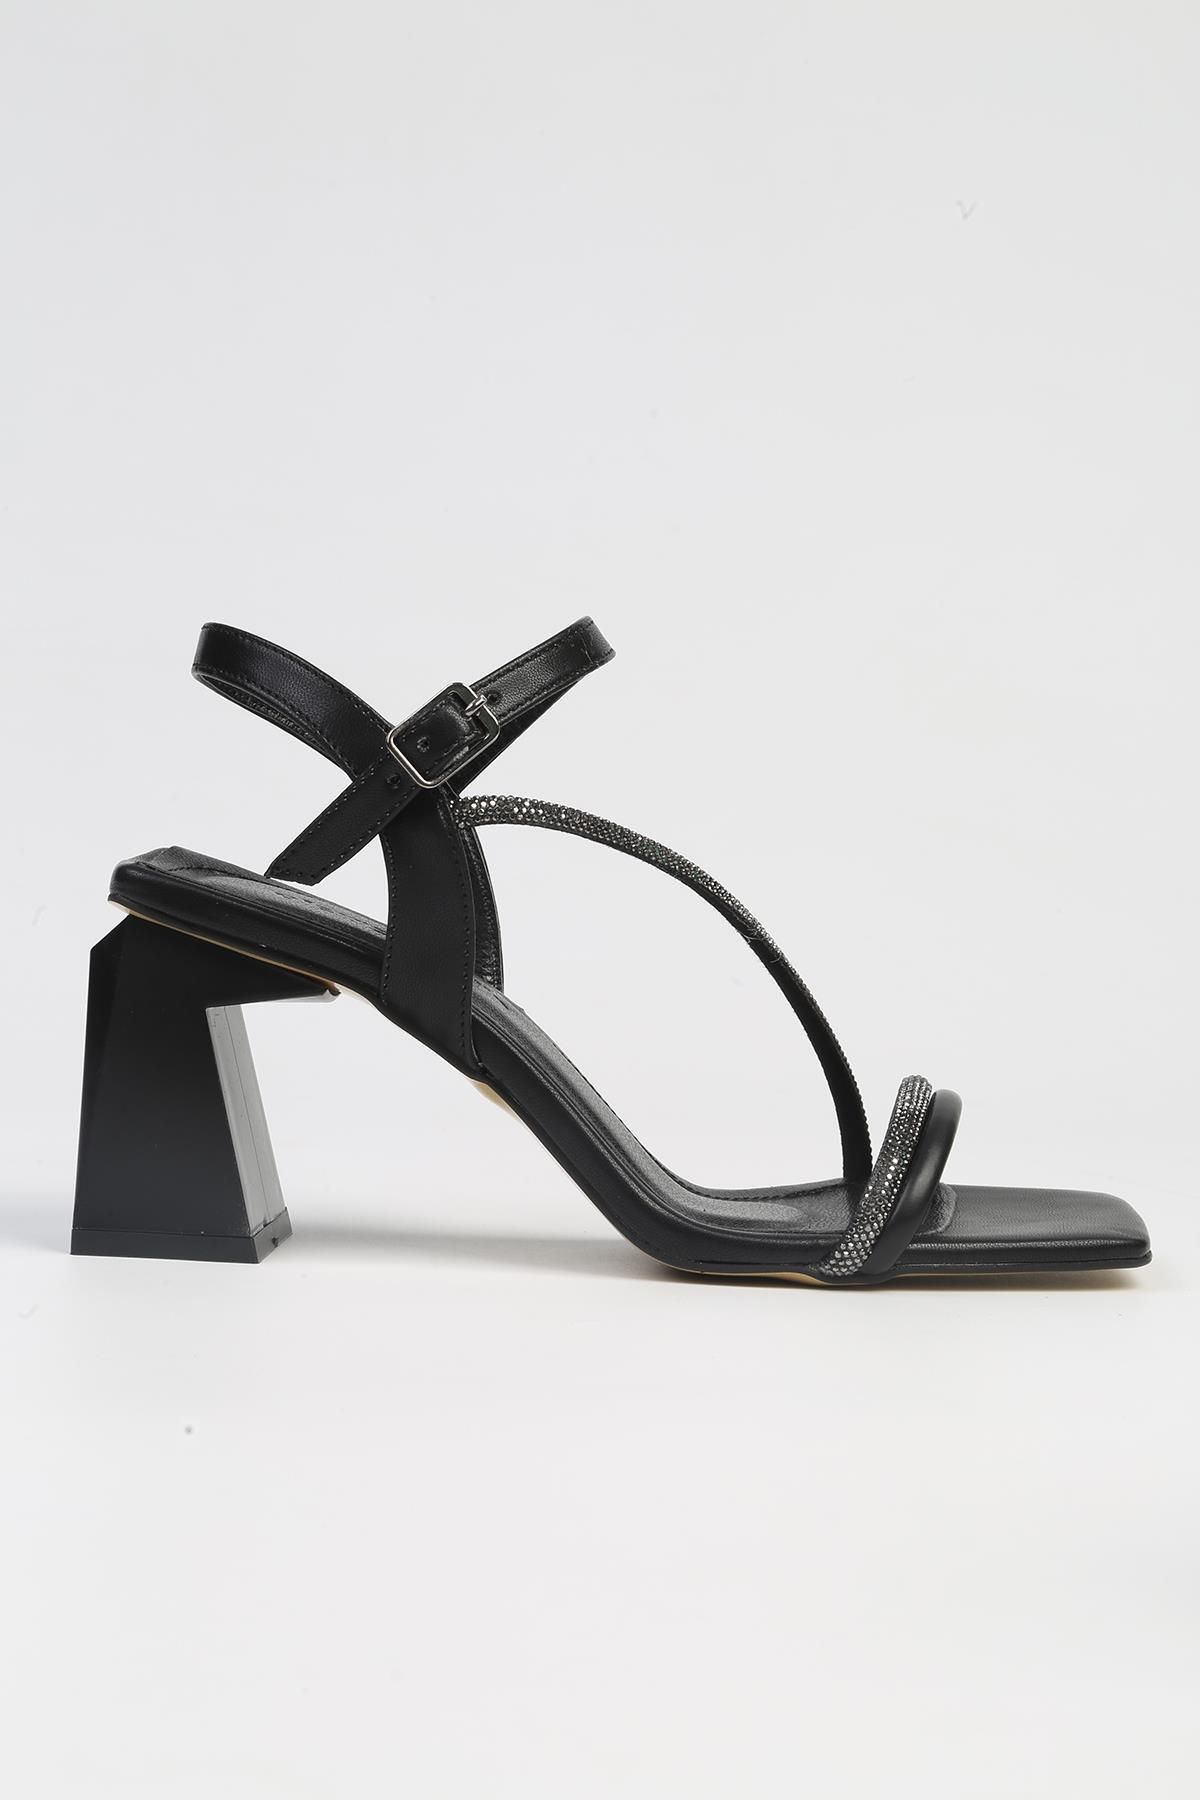 Pierre Cardin ® | PC-53010- 3691 Siyah-Kadın Topuklu Ayakkabı